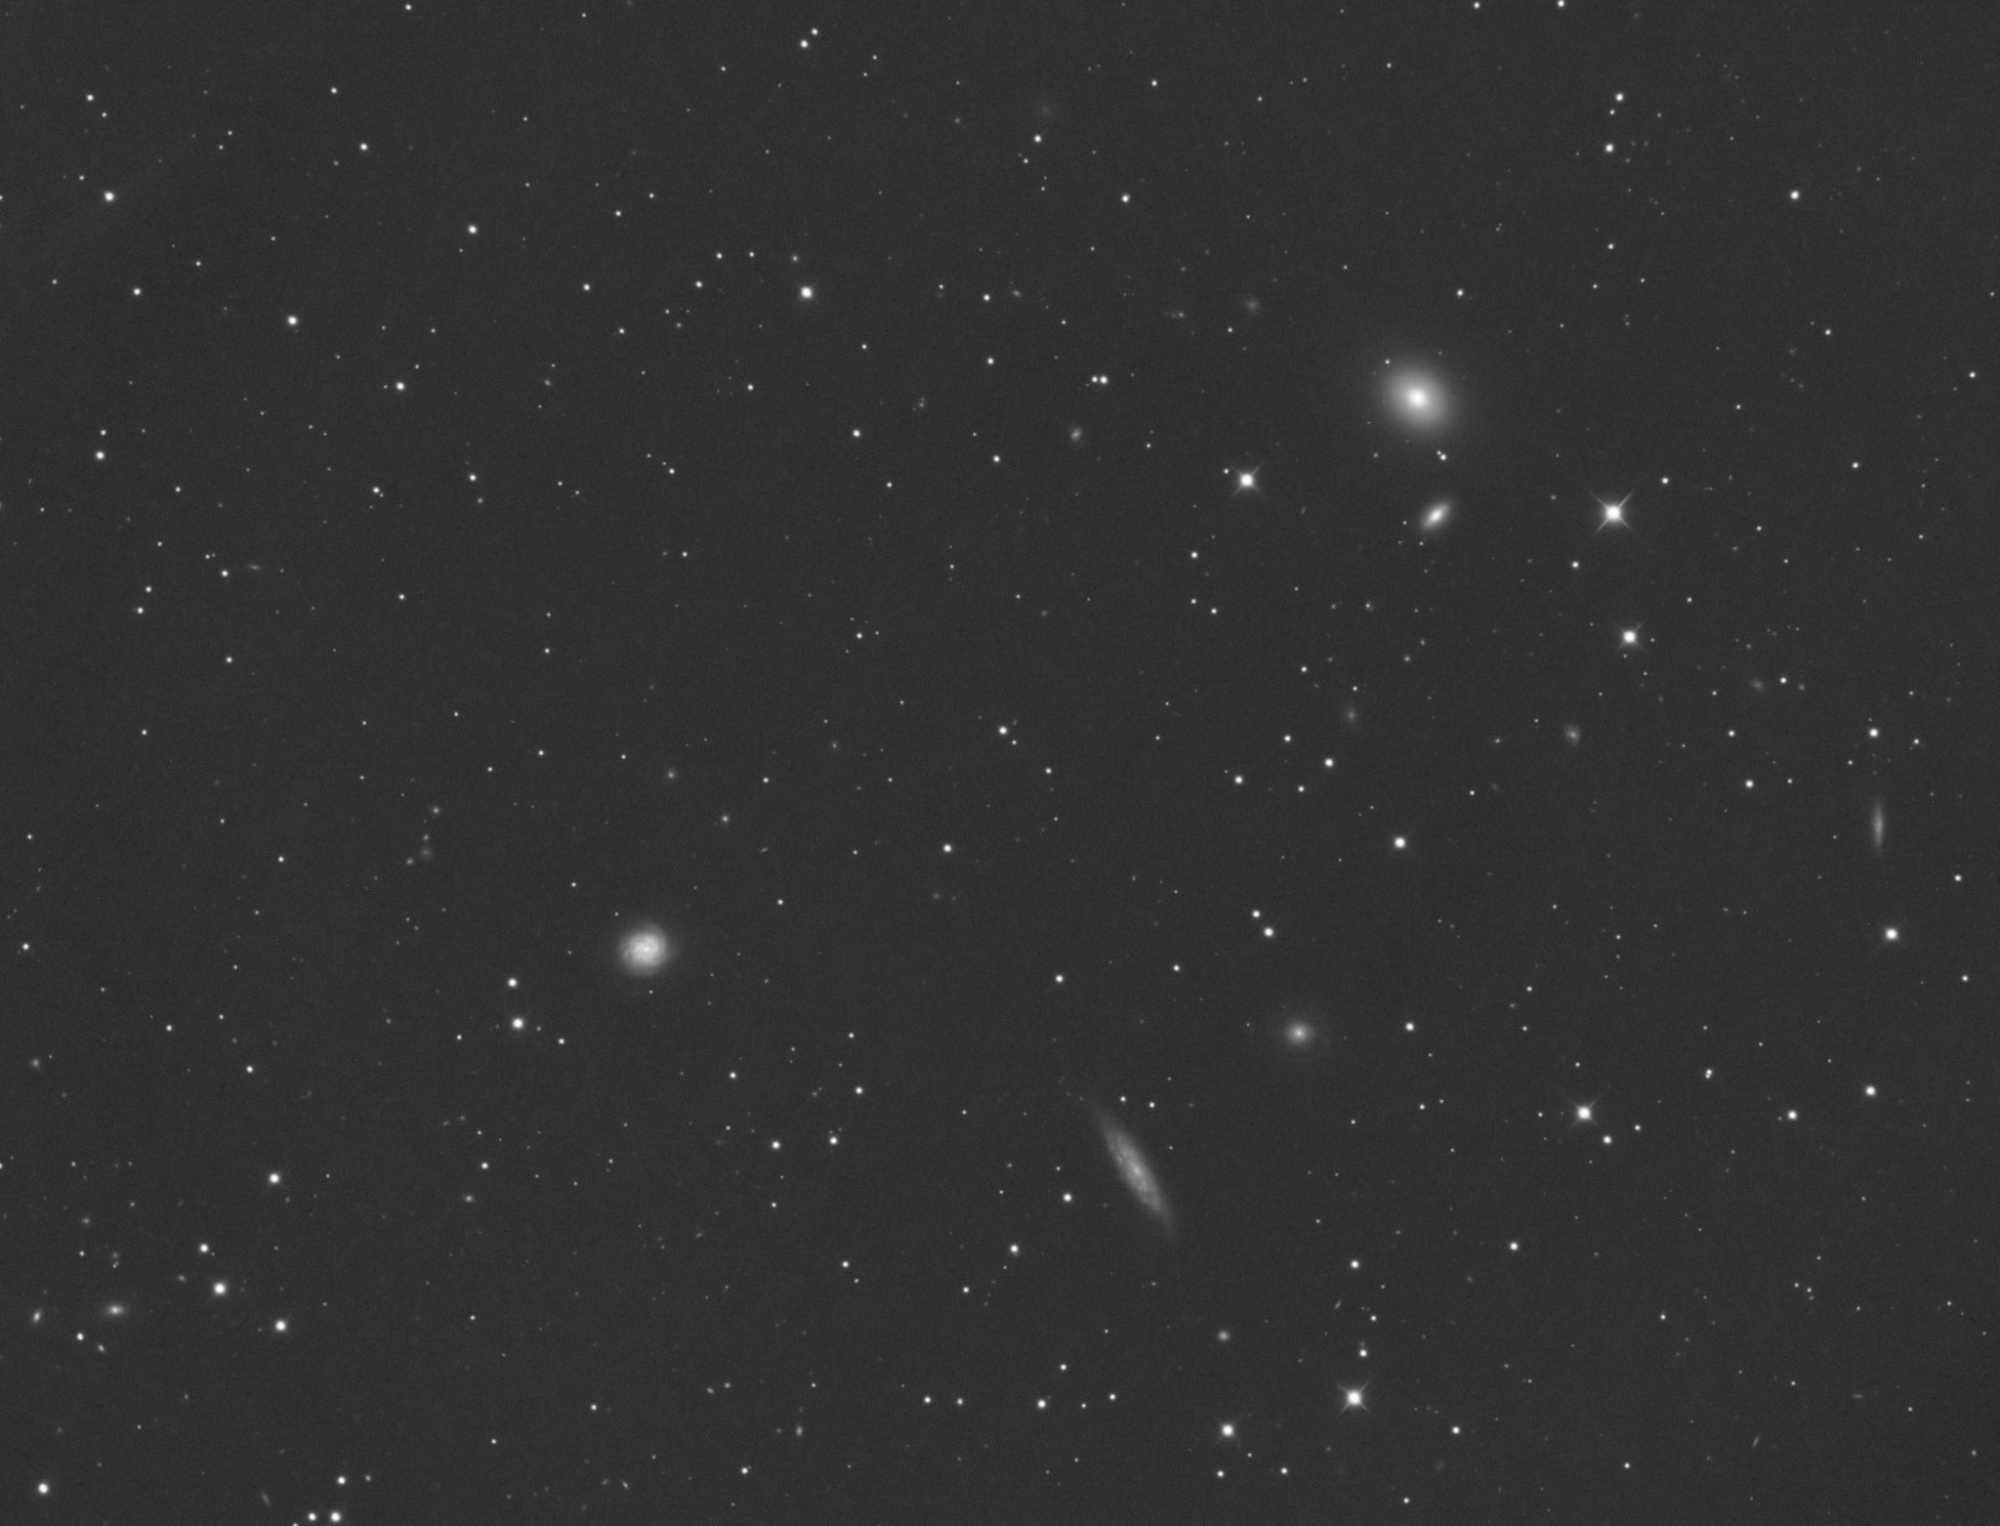 644fdc4918cab_NGC397260s_T0.thumb.jpg.1b57545abdda0e2c1c31a630dc6b59c0.jpg